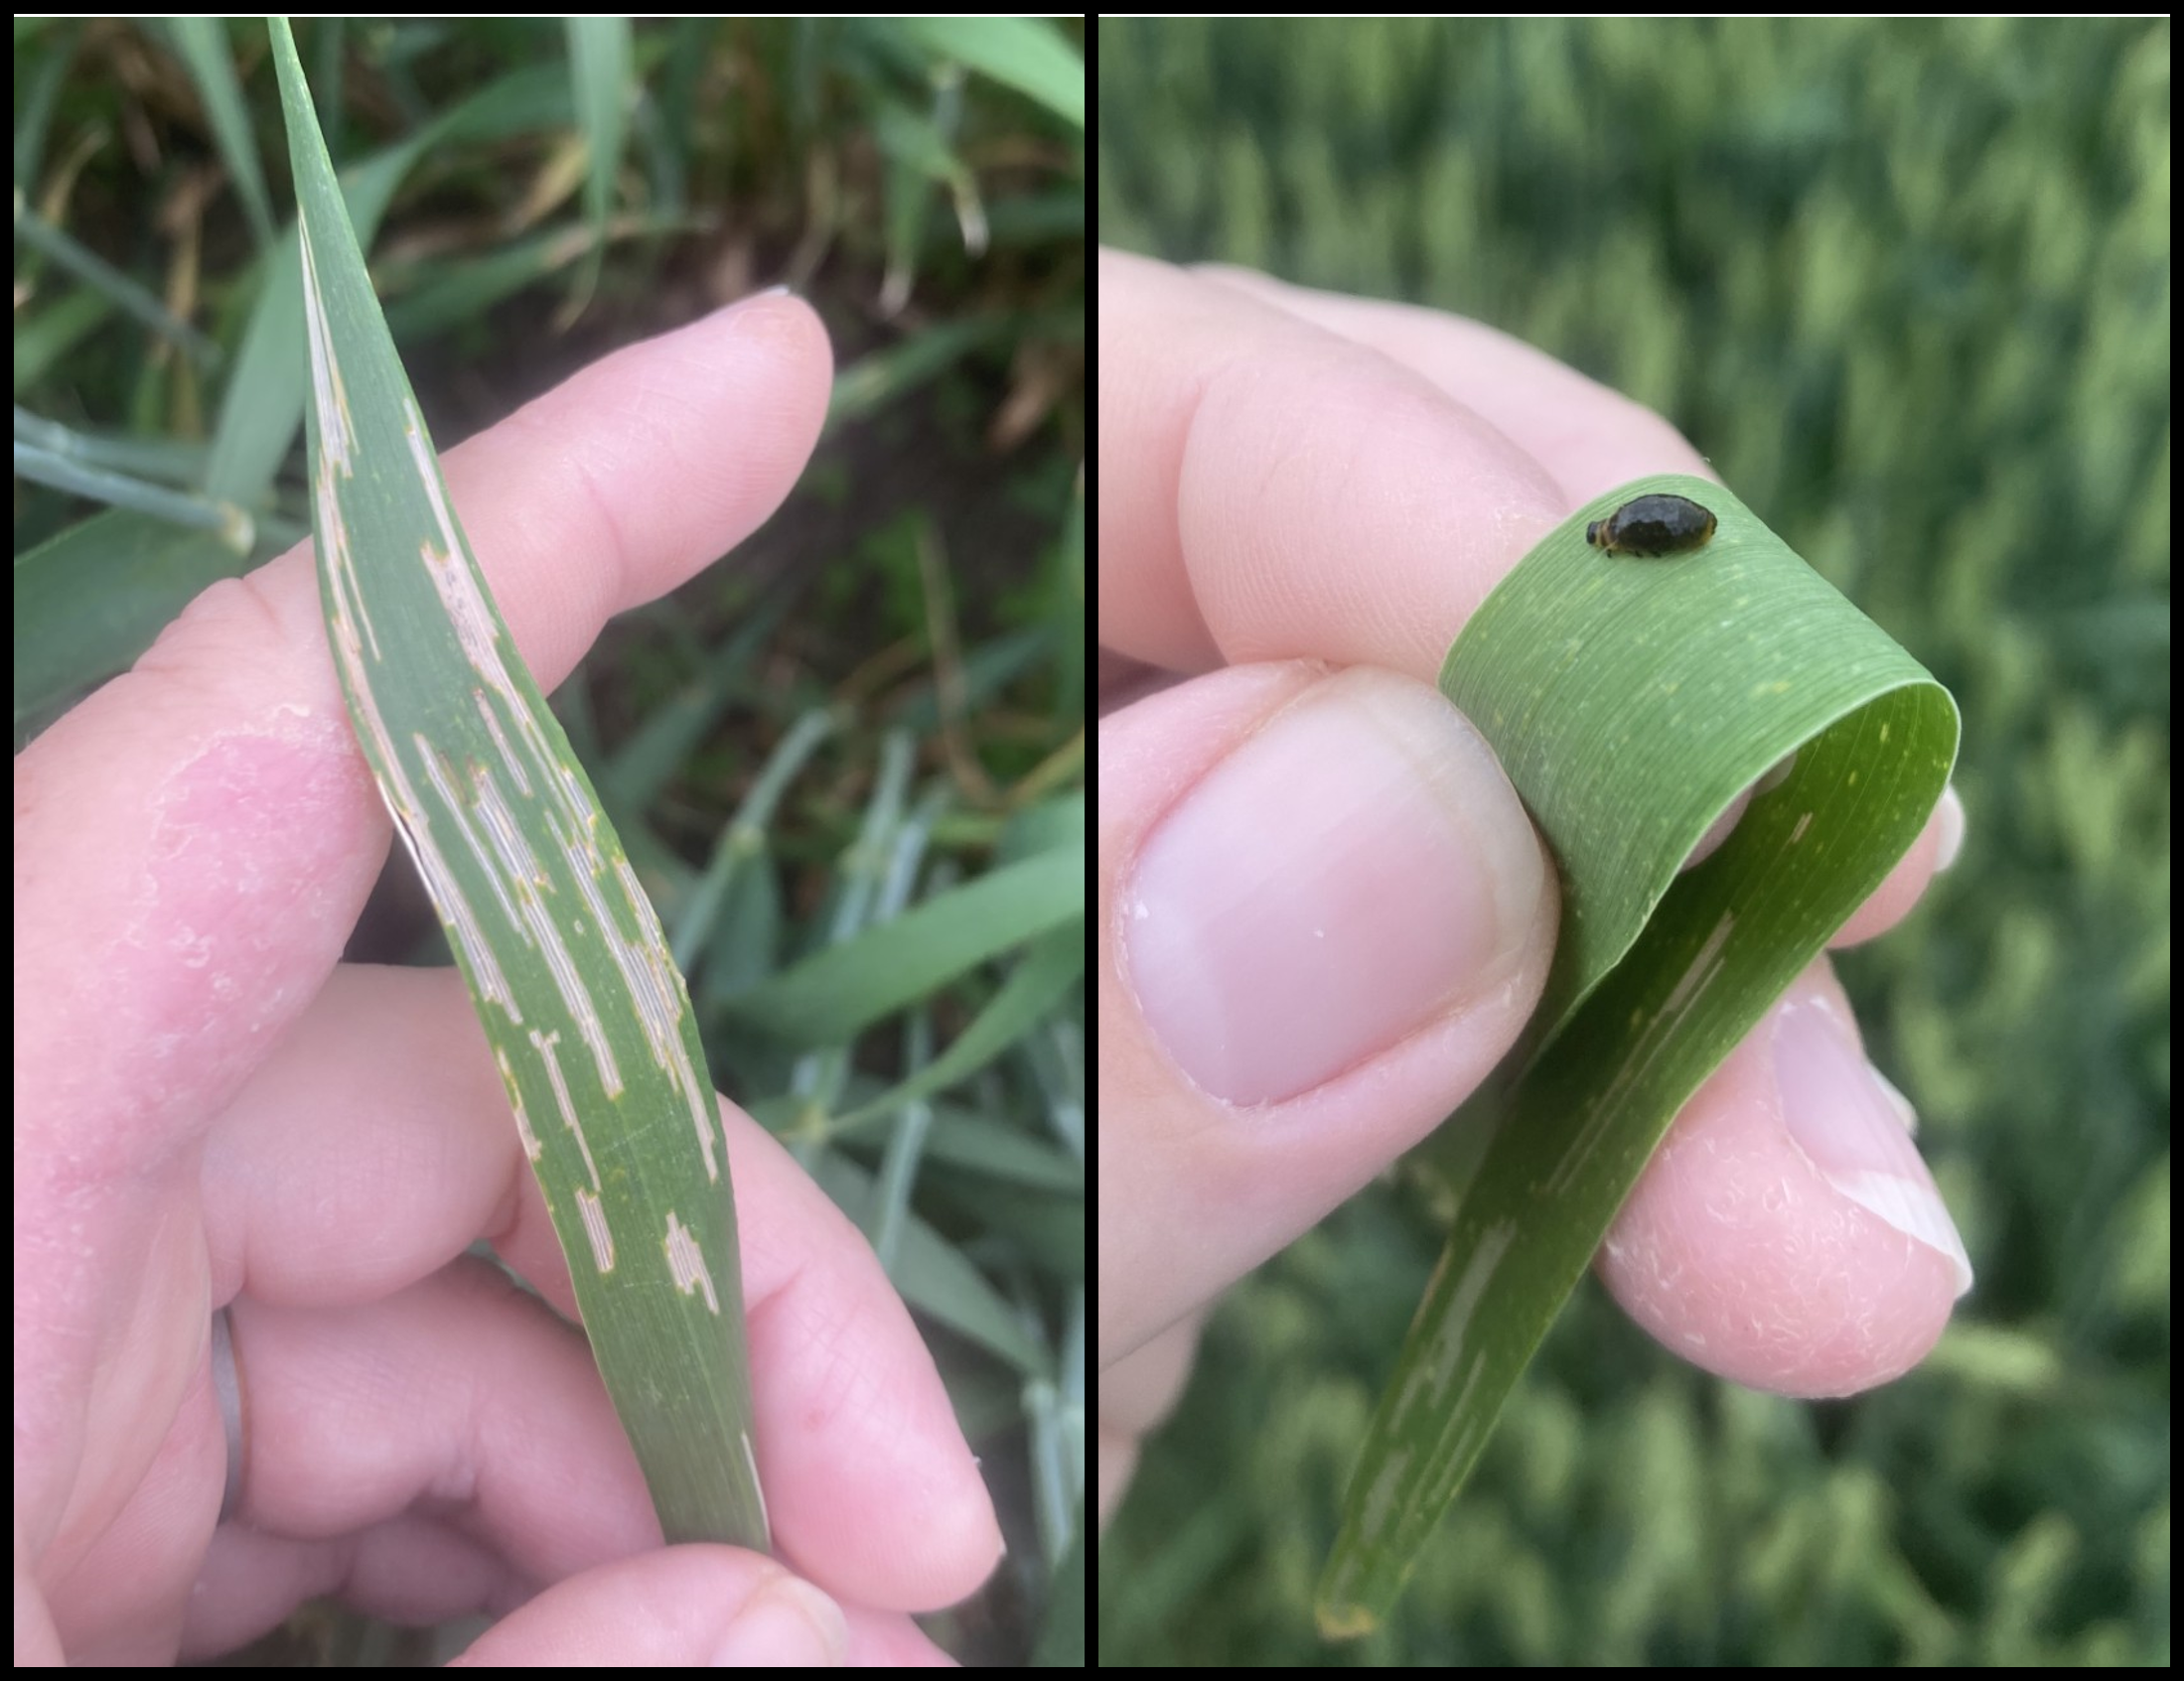 Cereal leaf beetle damage to corn leaf and a larva.